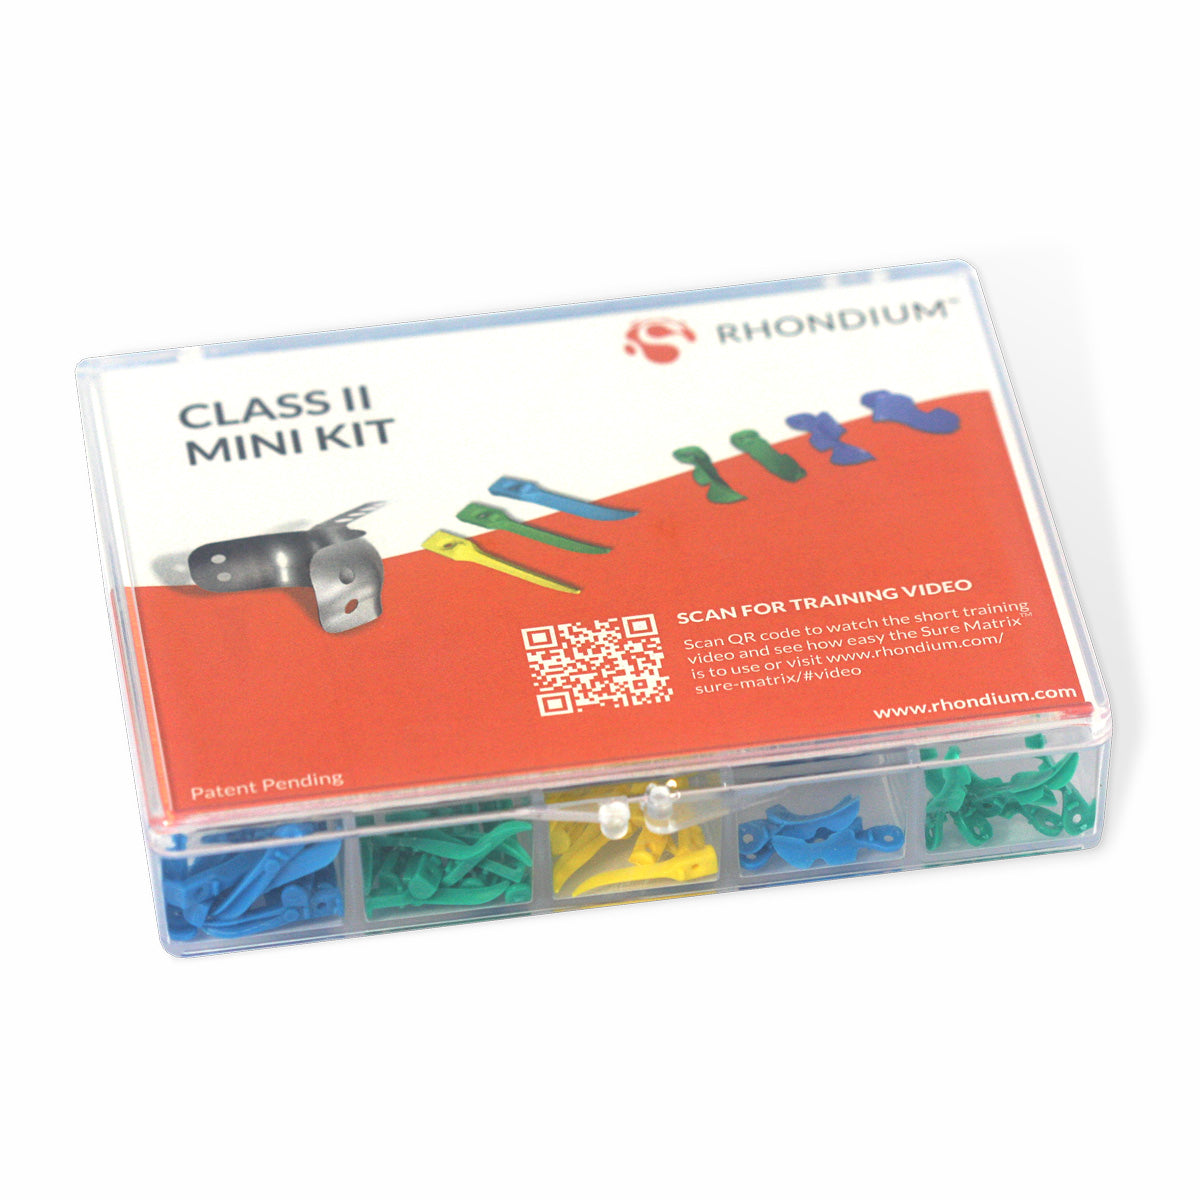 Sure Matrix Class II Mini Kit